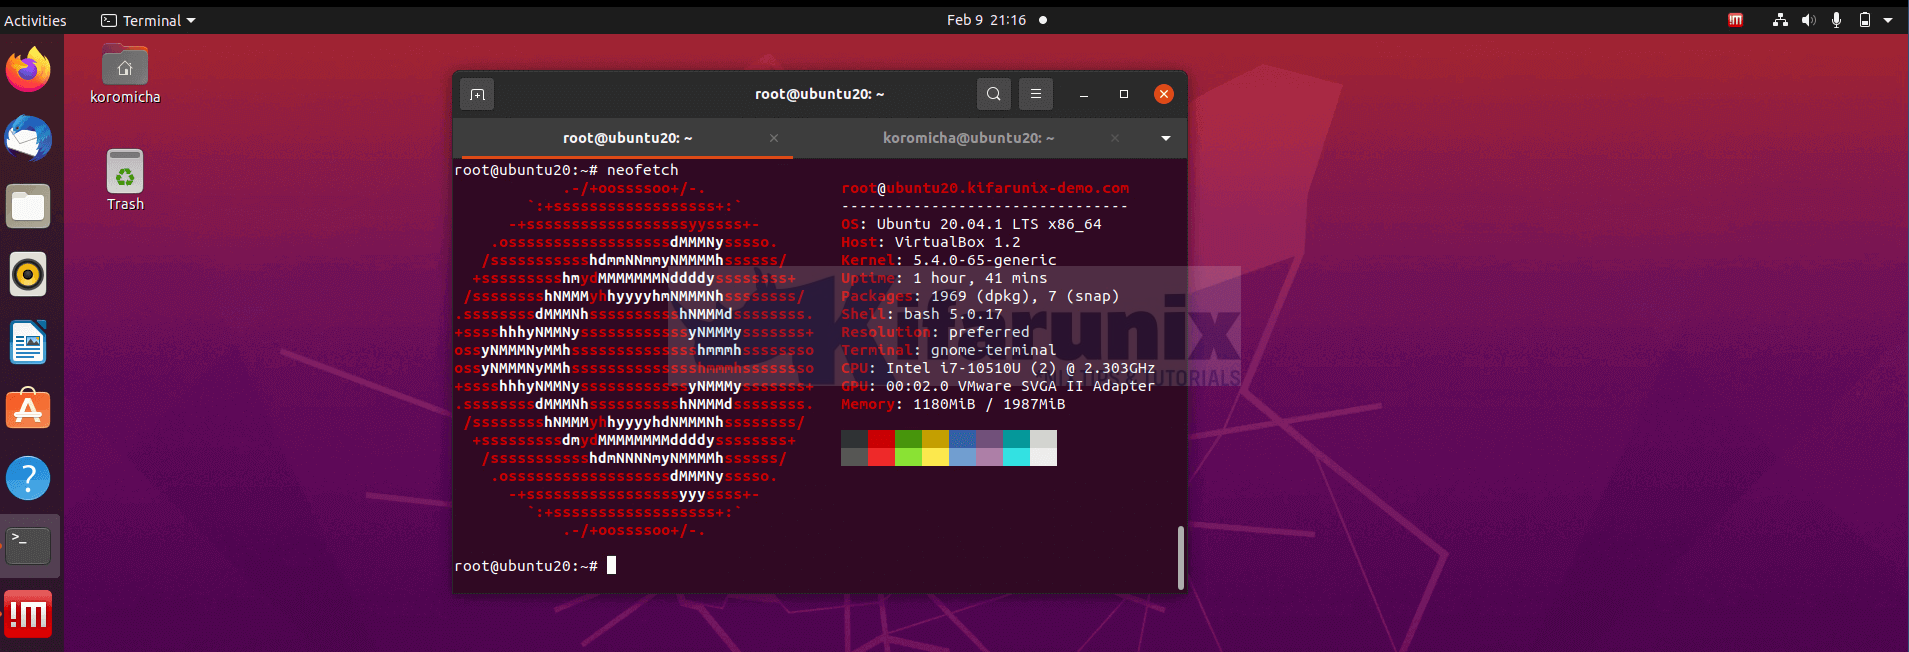 Install NoMachine on Ubuntu 20.04